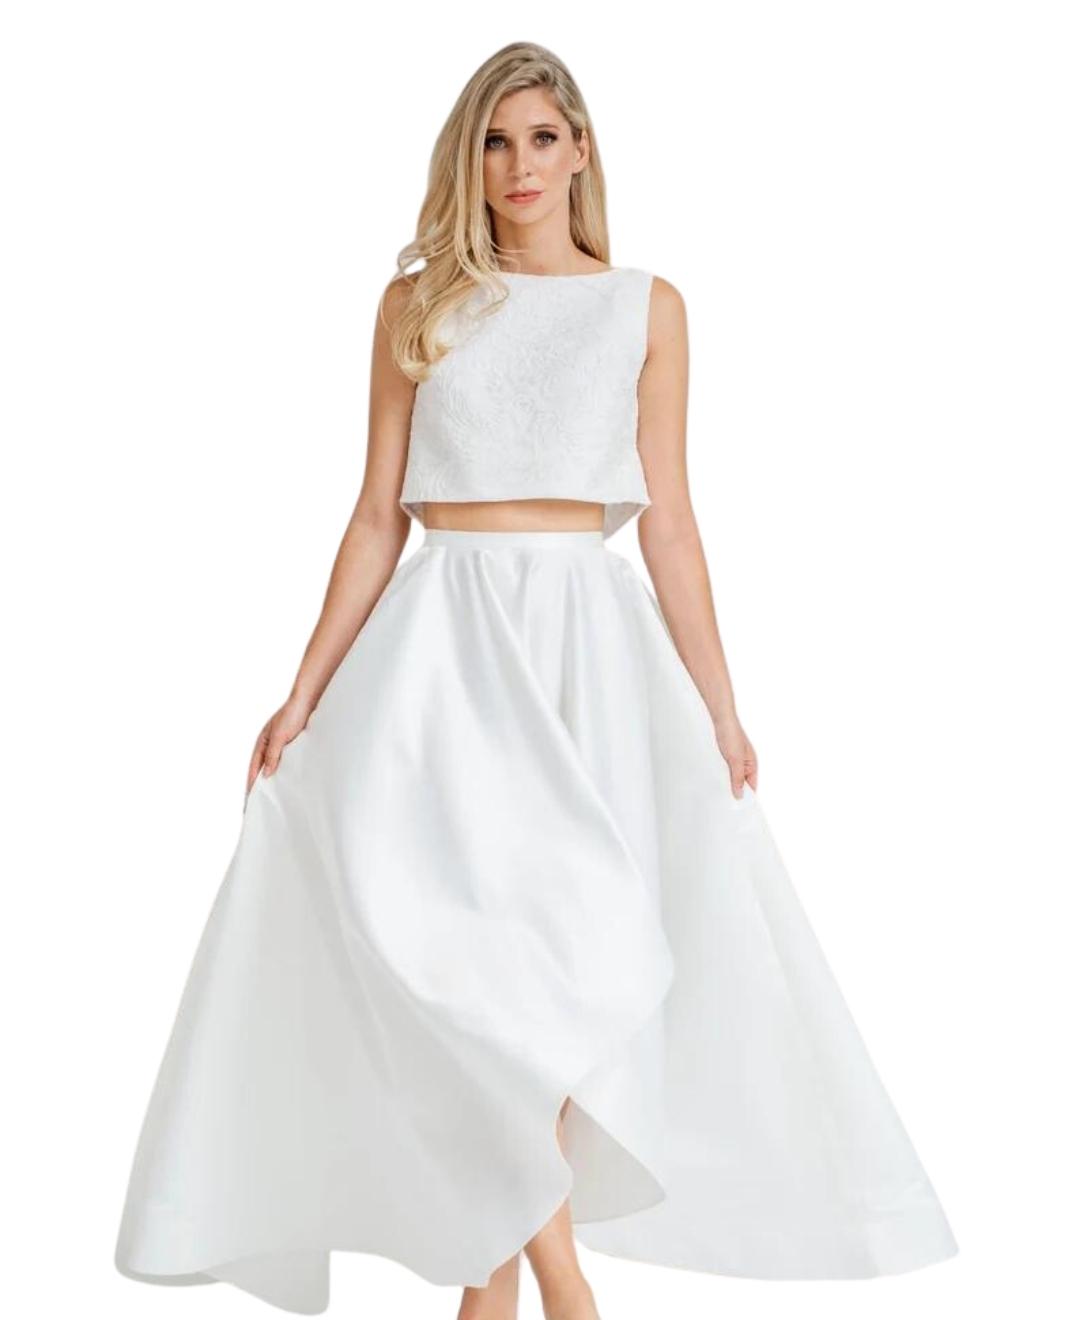 two-piece style wedding dress